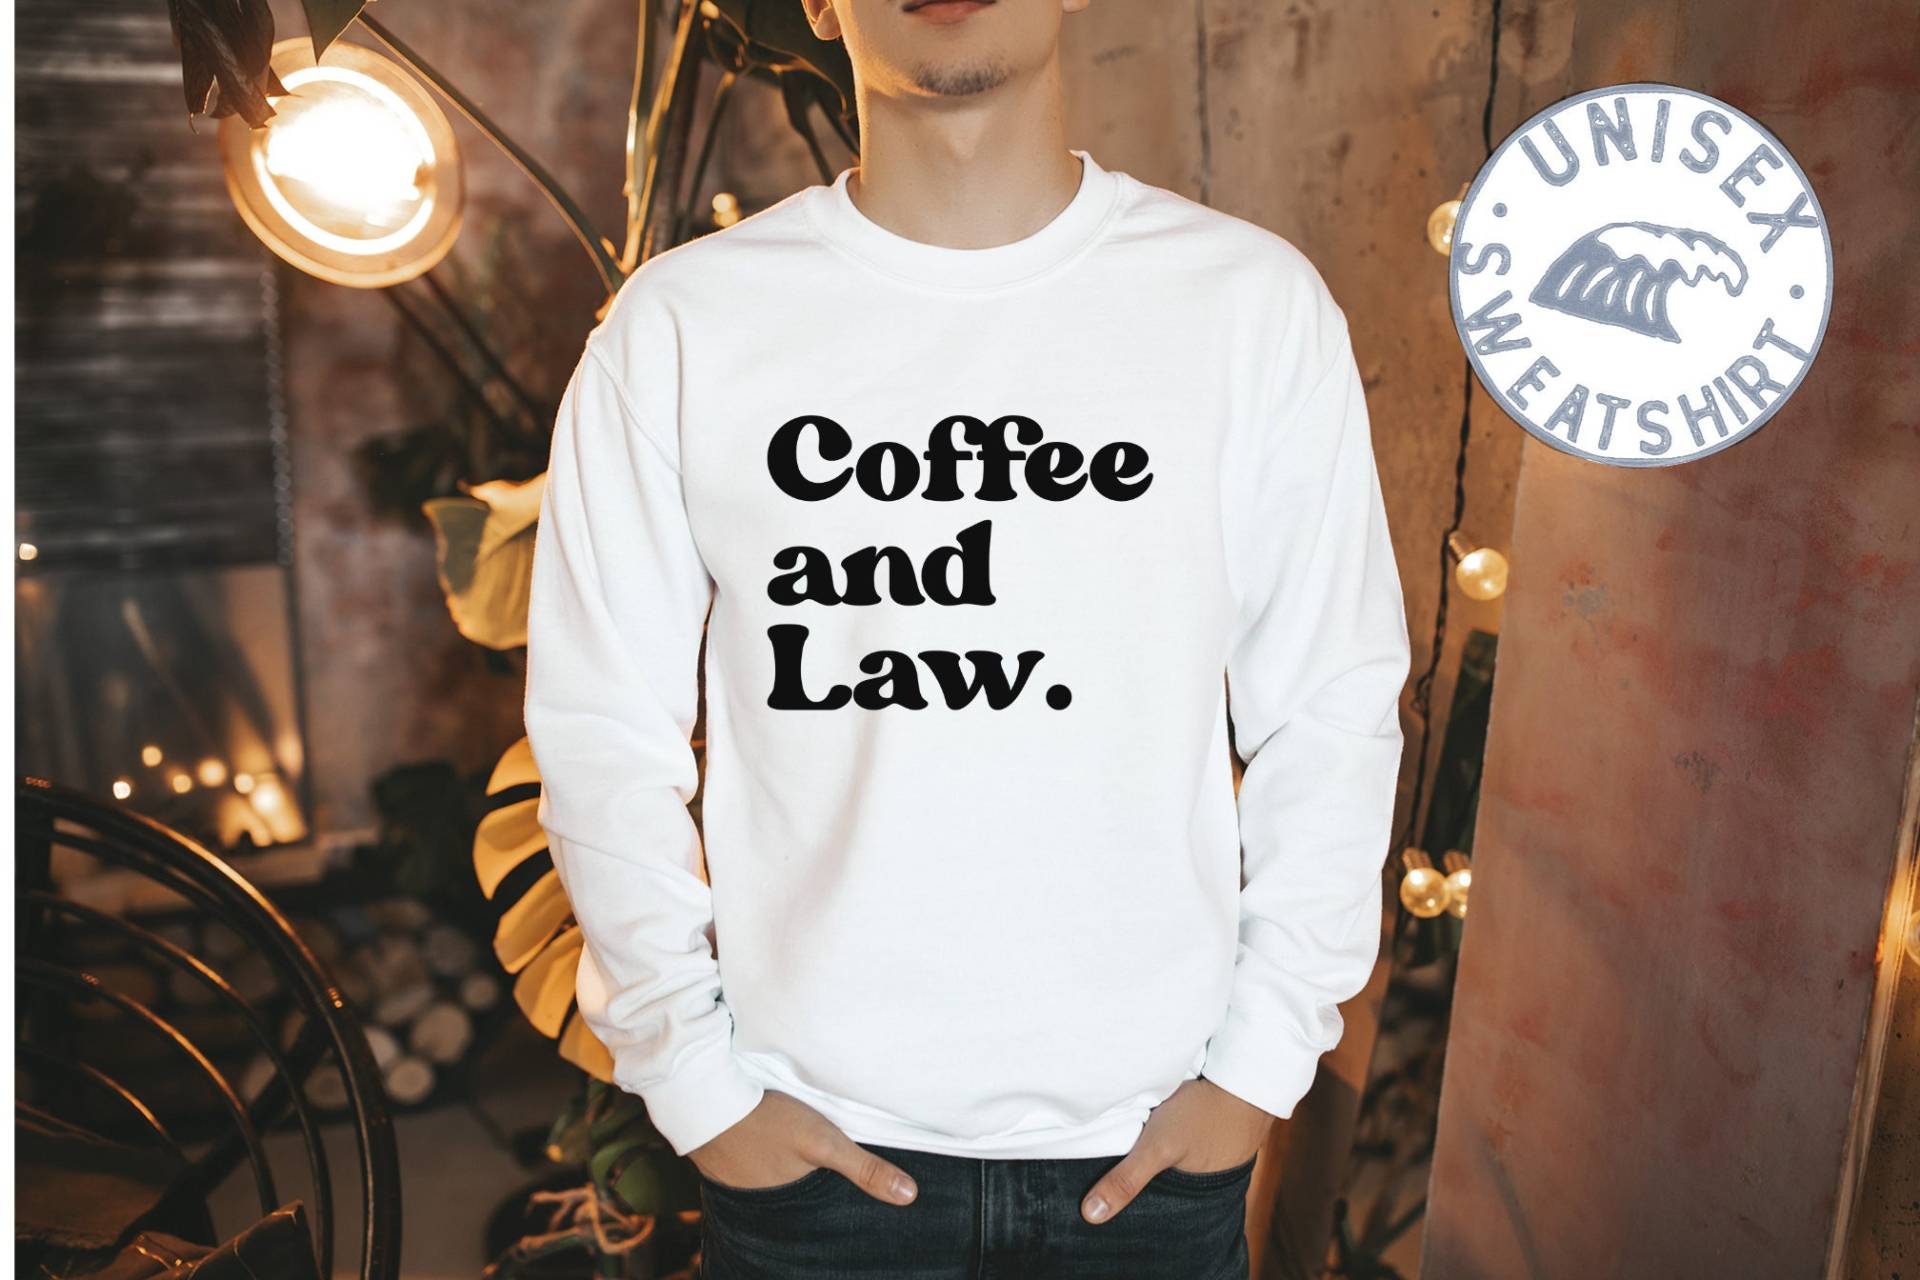 Lawyer Law School Studenten Abschluss Sweatshirt, Lustige Pullover Shirt, Geburtstagsgeschenke Für Männer Und Frauen von 22ndOfOctober